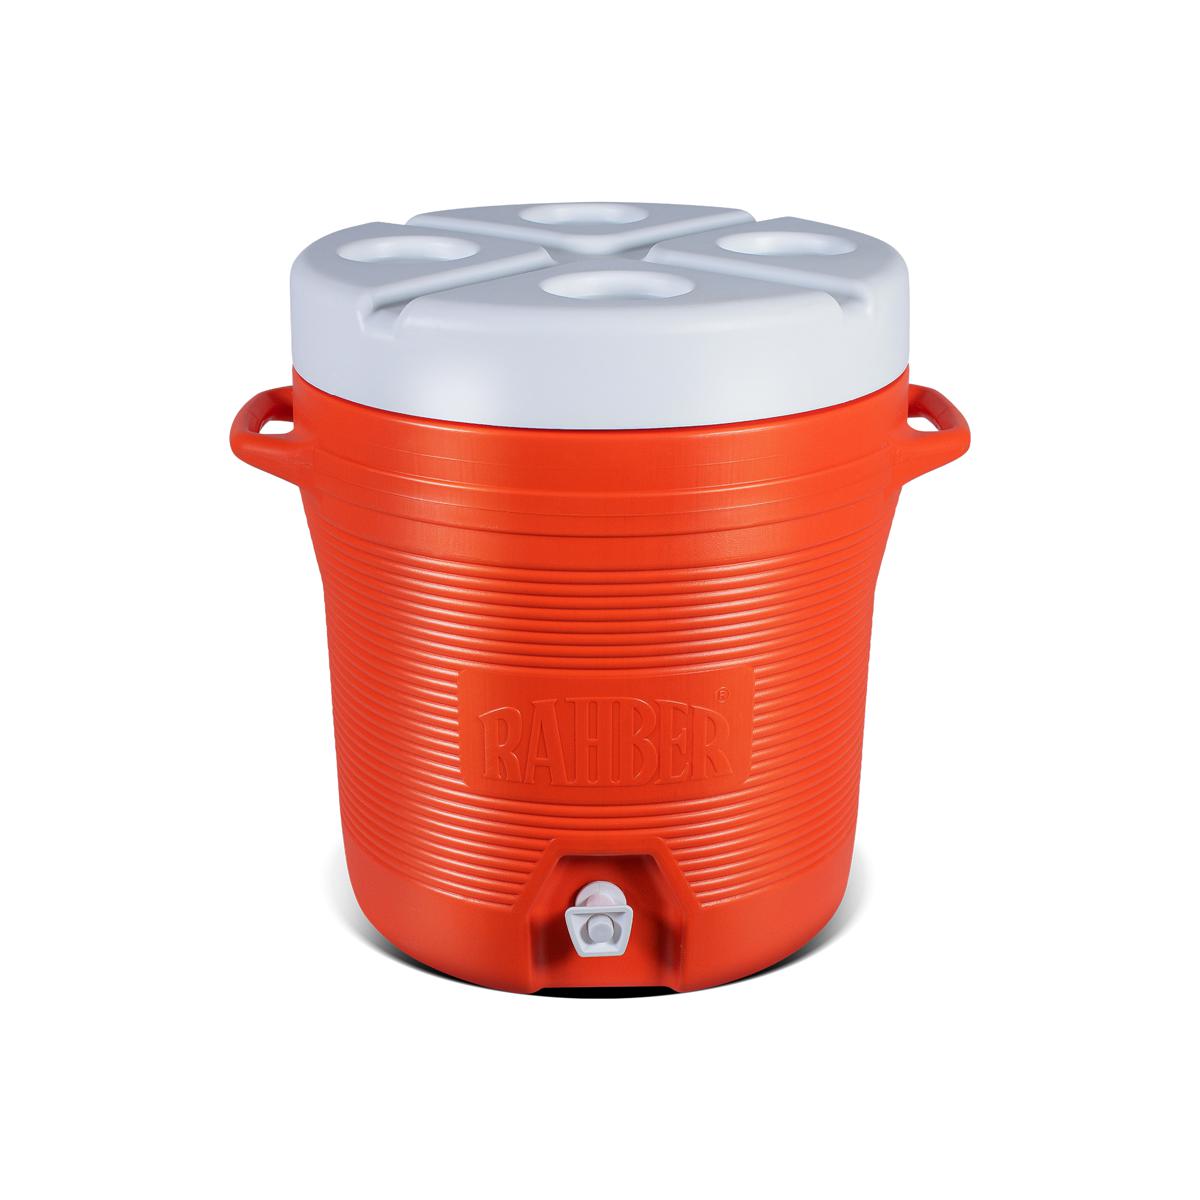 Water Cooler Cooler Longer Design Water Cooler Easy to Carry 30 Liter in Pakistan